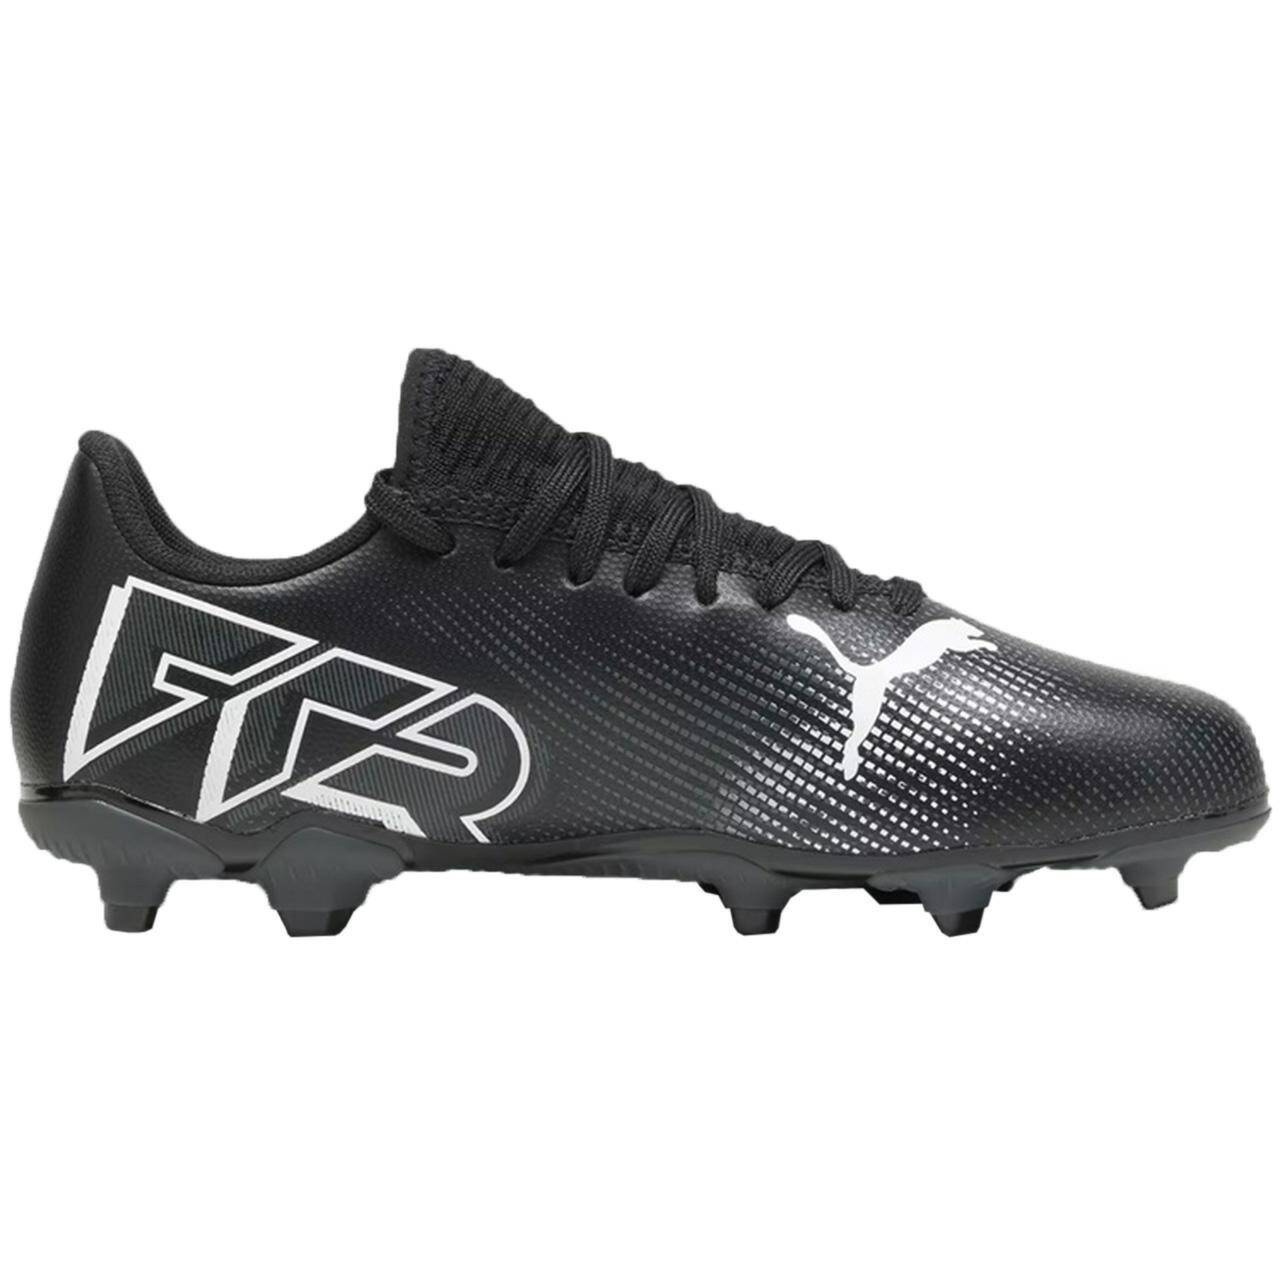 Puma buty piłkarskie Future 7 FG 107734